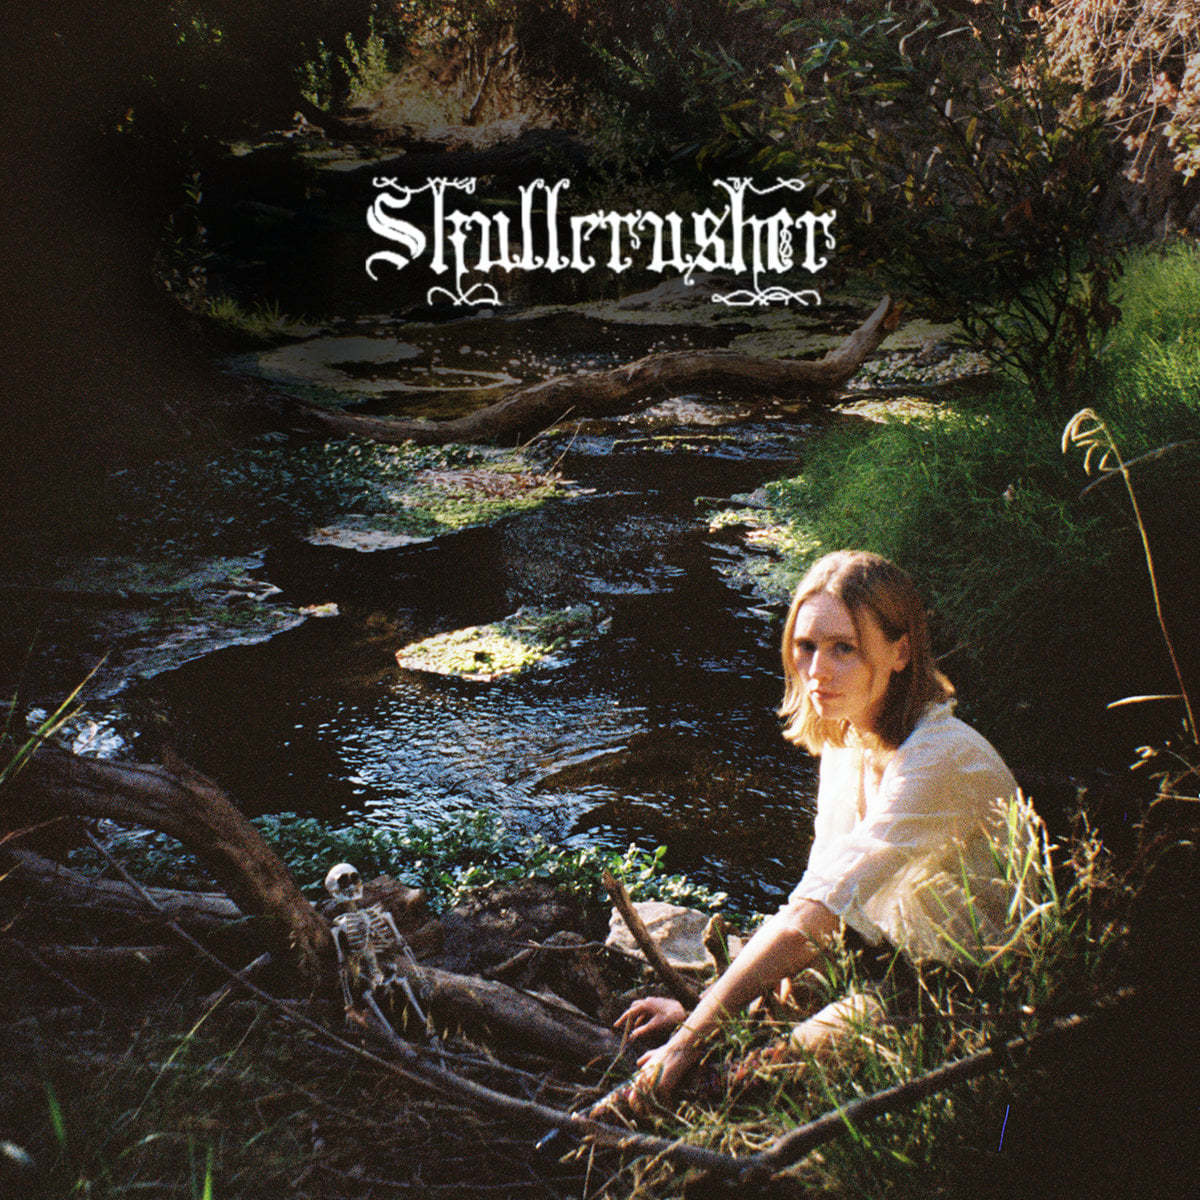 imagen 1 de Skullcrusher es el proyecto personal de la cantautora de Los Angeles Hellen Ballentine.